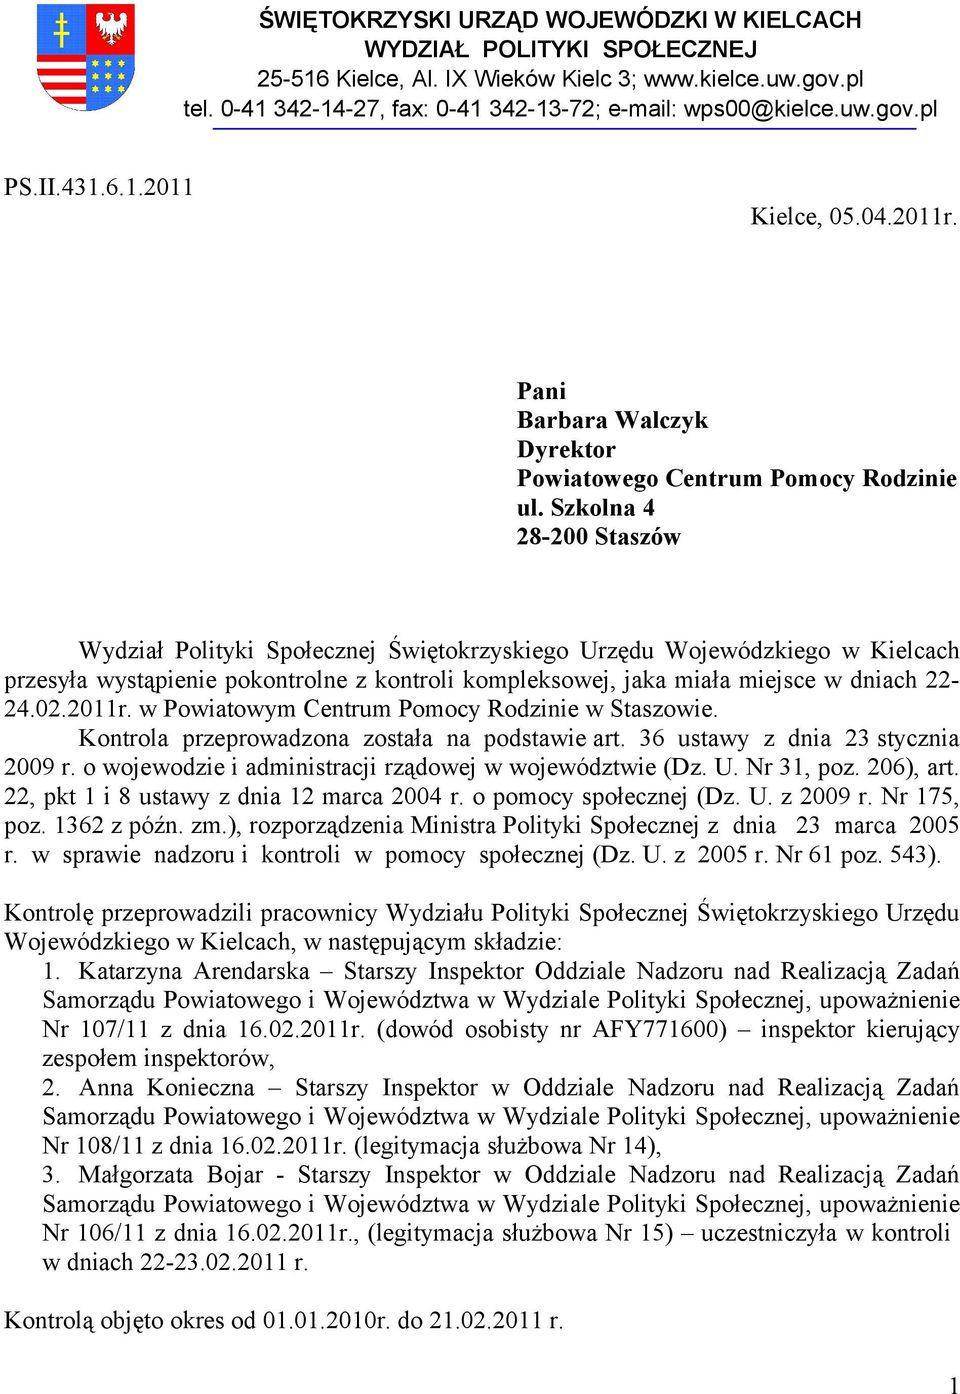 Szkolna 4 28-200 Staszów Wydział Polityki Społecznej Świętokrzyskiego Urzędu Wojewódzkiego w Kielcach przesyła wystąpienie pokontrolne z kontroli kompleksowej, jaka miała miejsce w dniach 22-24.02.